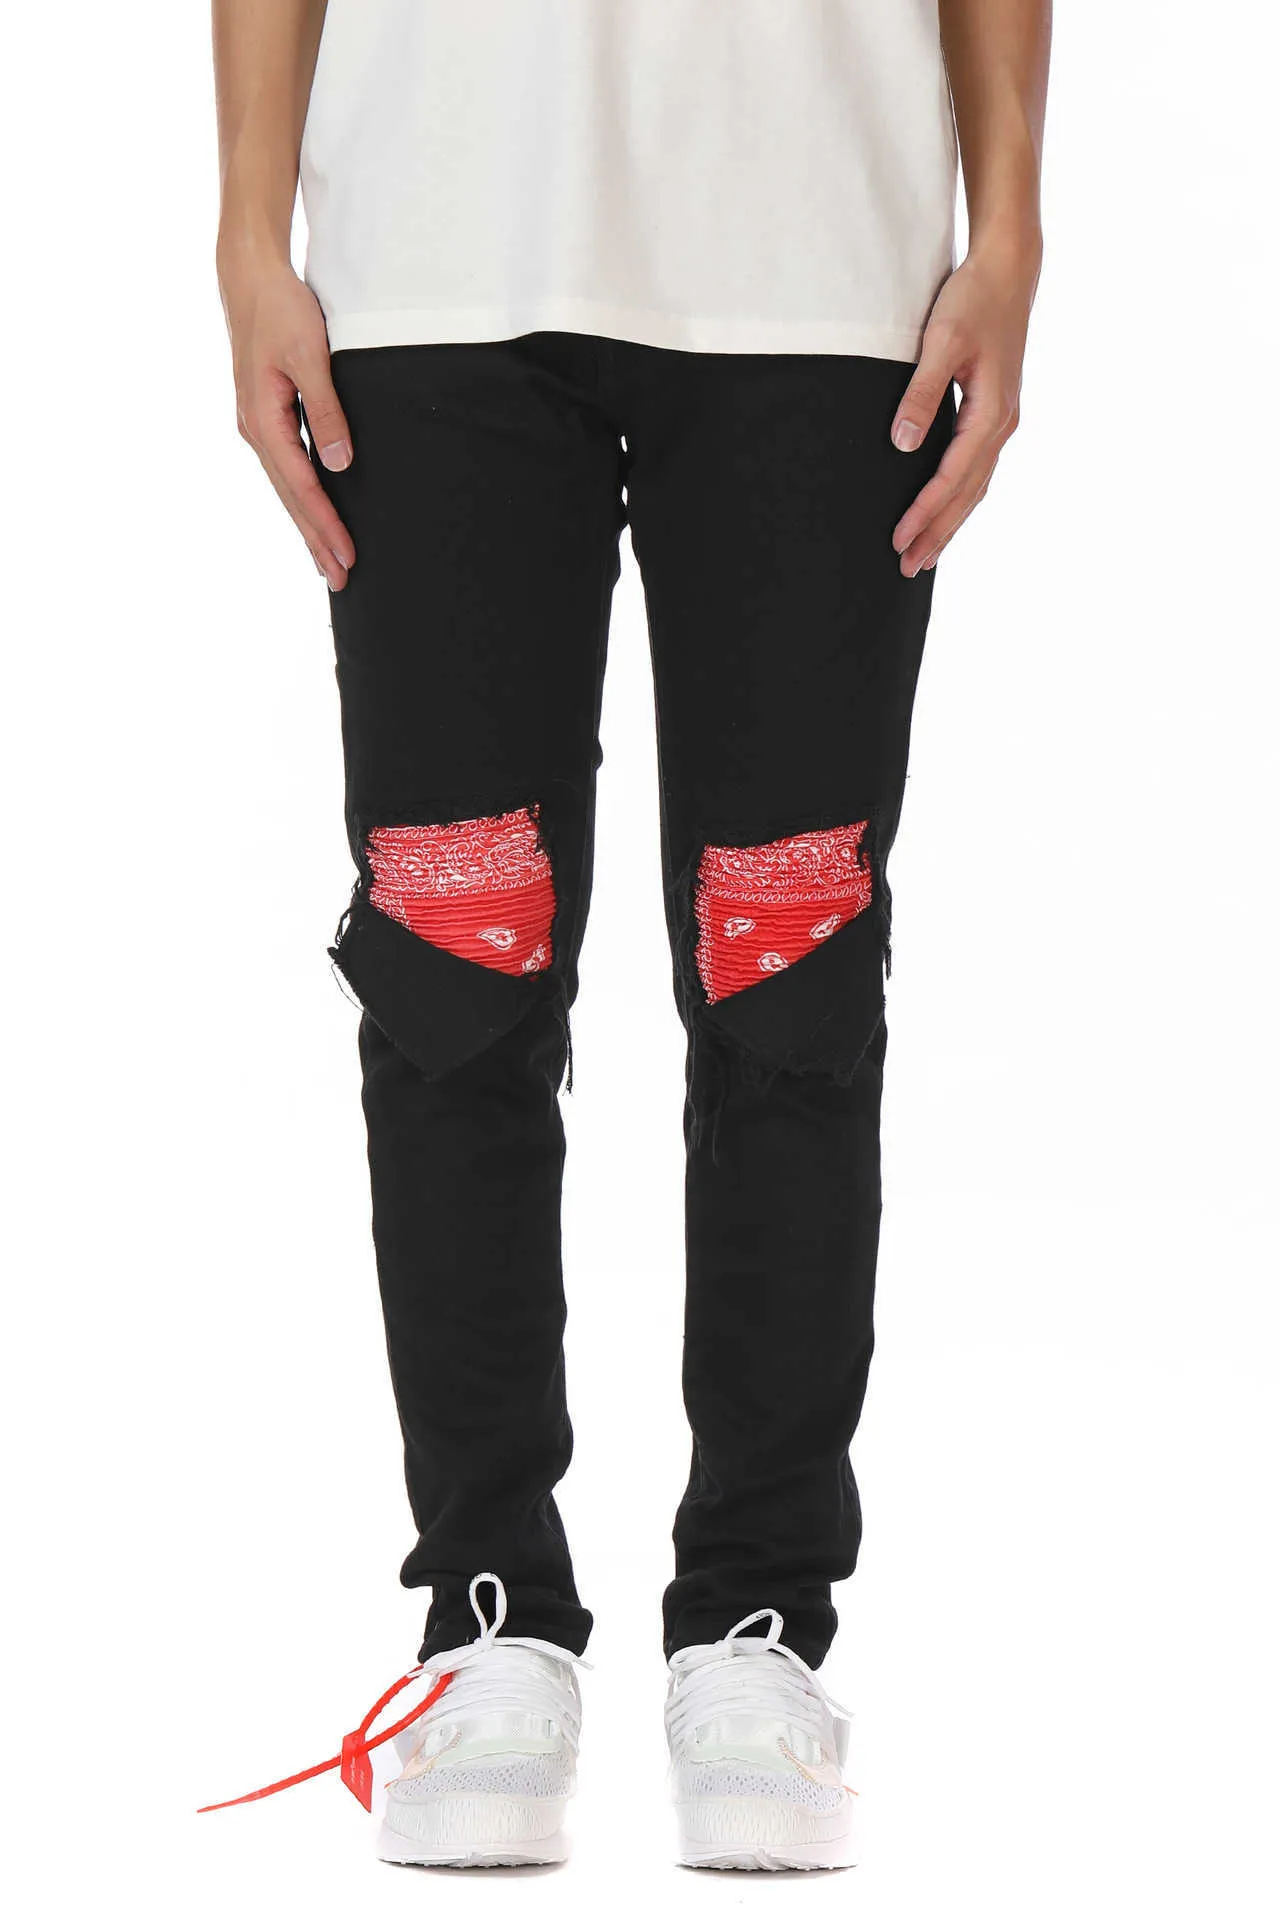 Mäns jeans tvättade hål katt skägg lapptäcke cashewnöt lila röda amoeba jeans smala fit mikro elastiska jeans265s